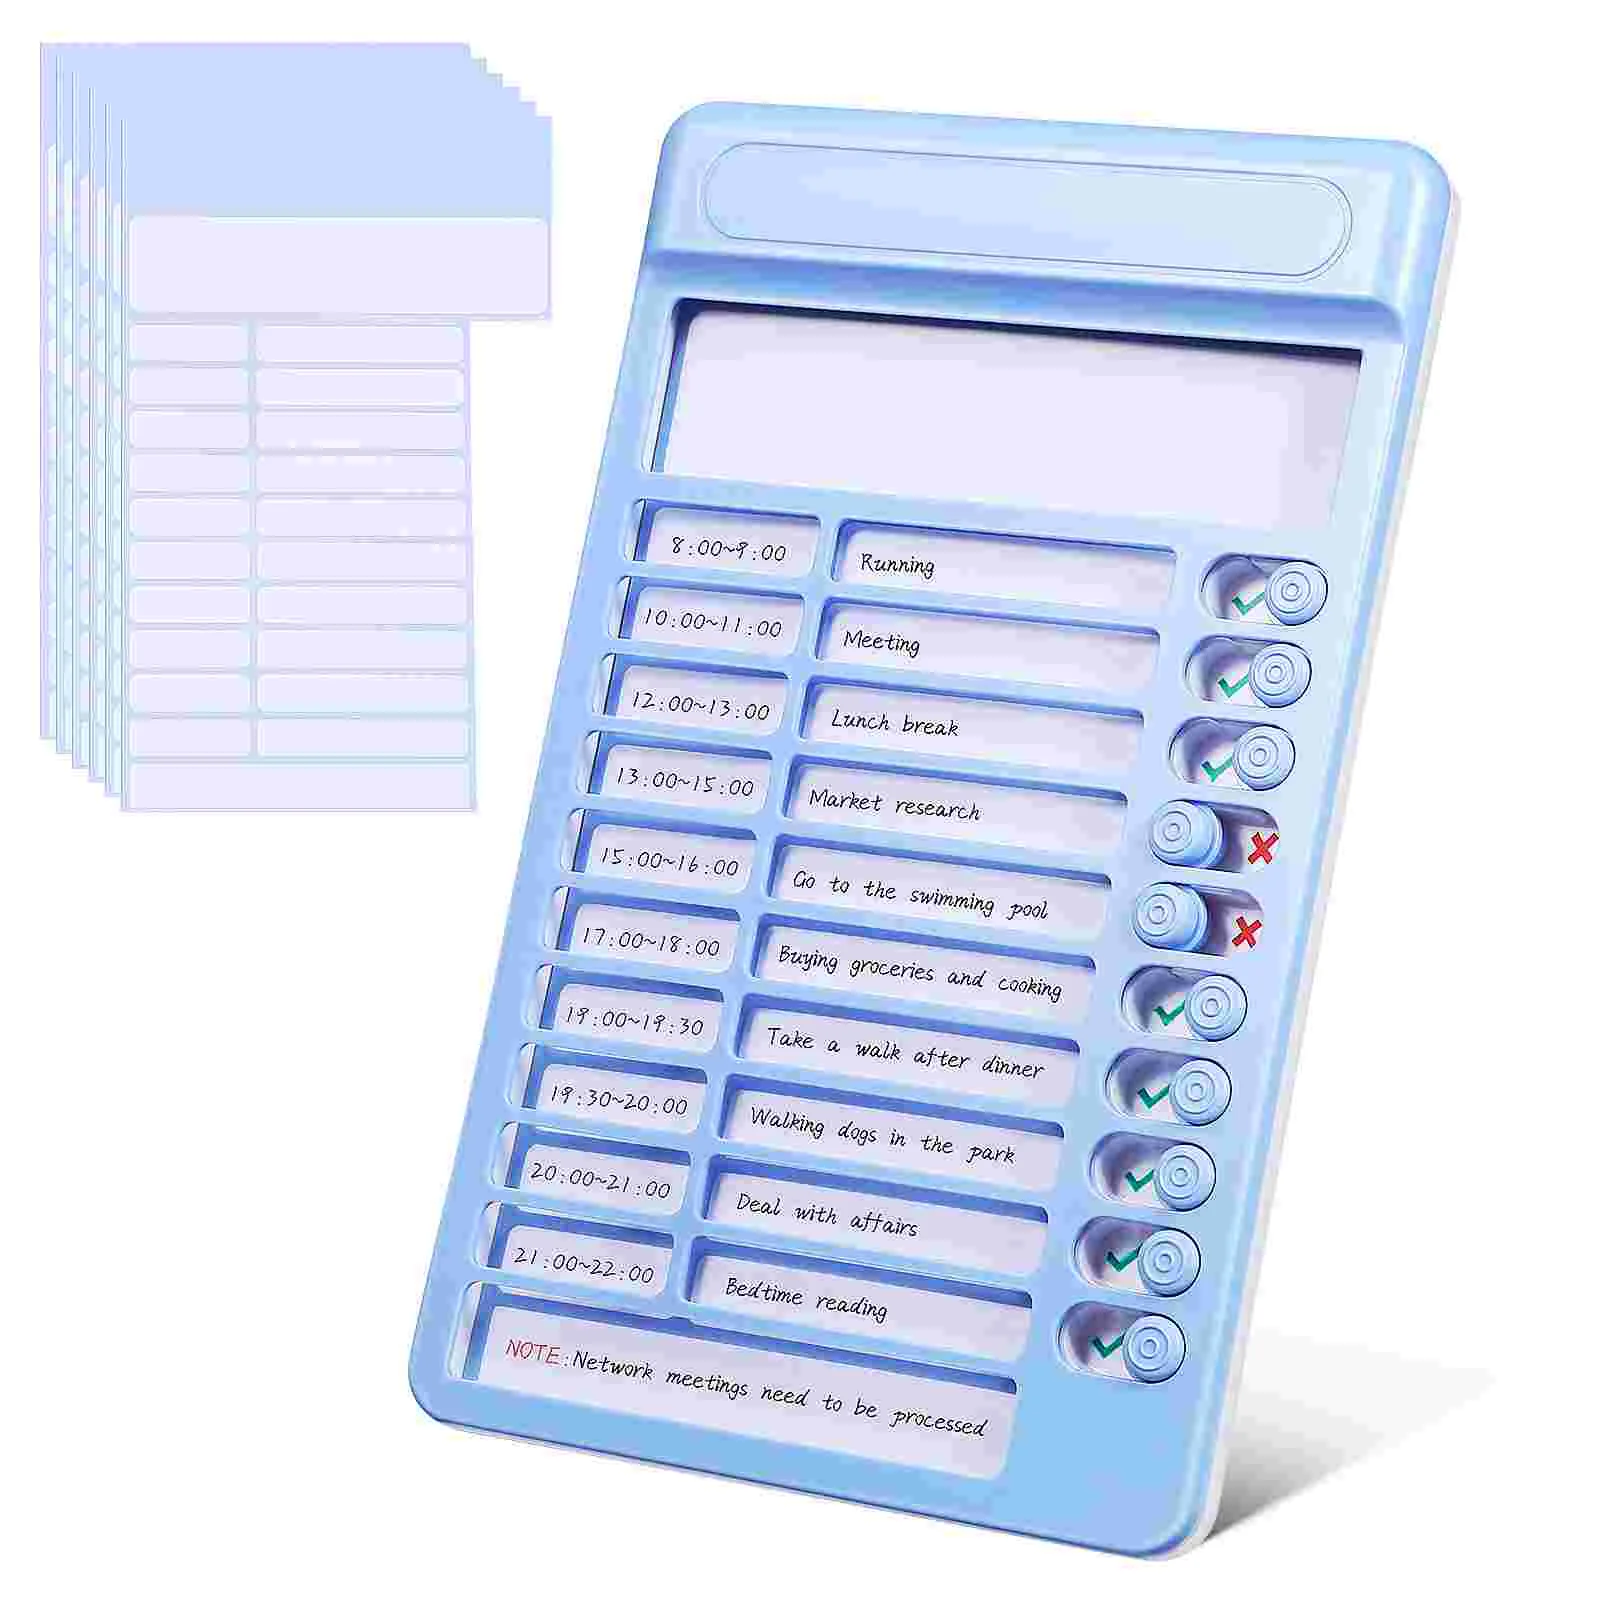 

Самонастраивающийся контроллер, визуальная подкладка для напоминаний, домашние строения, слайдер для таблицы расписания, ползунок, расписание, другое